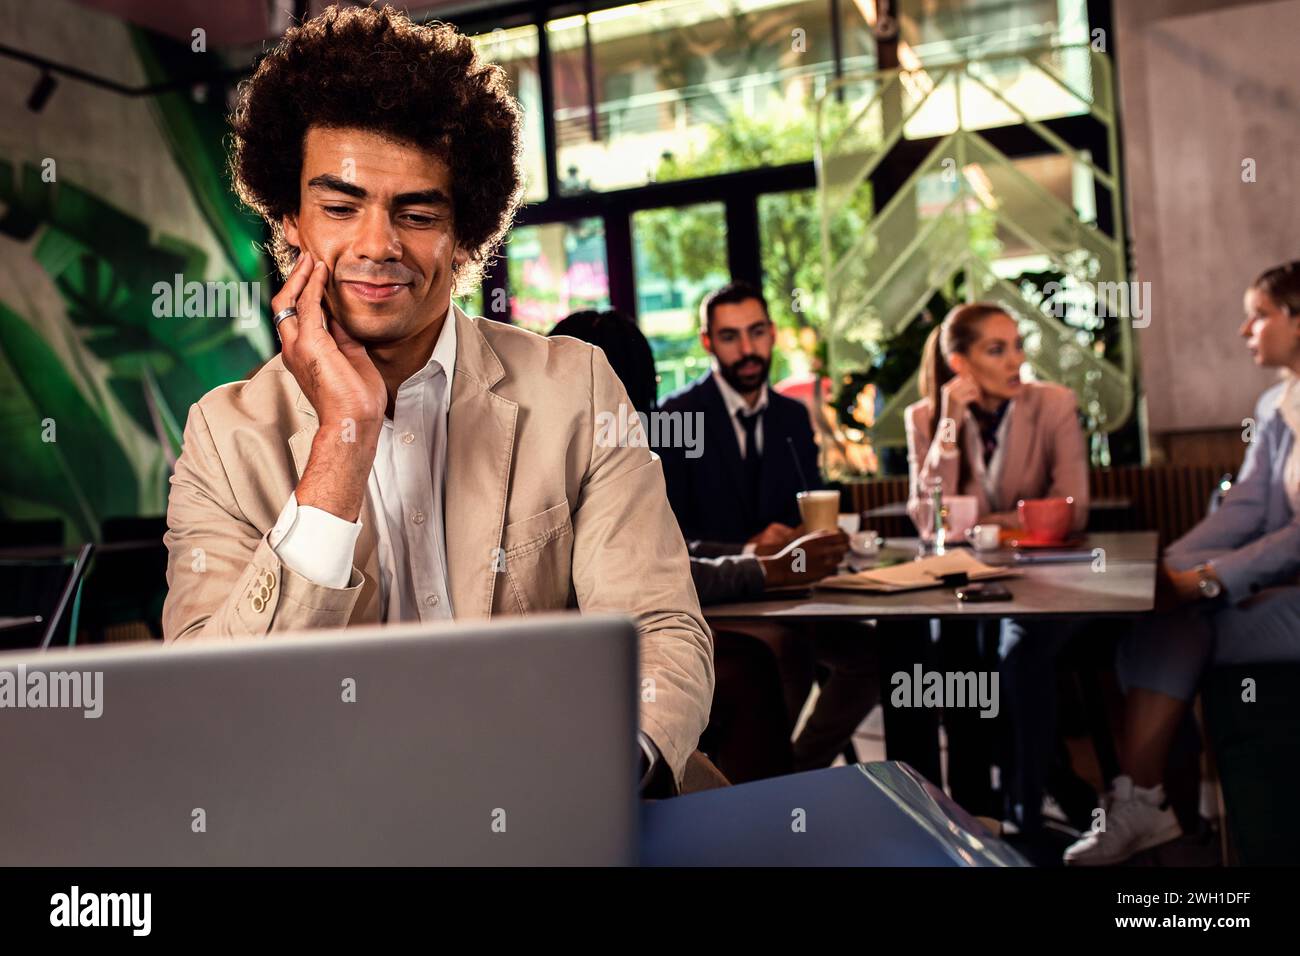 Afroamerikanischer Geschäftsmann, der mit Laptop arbeitet. Stockfoto